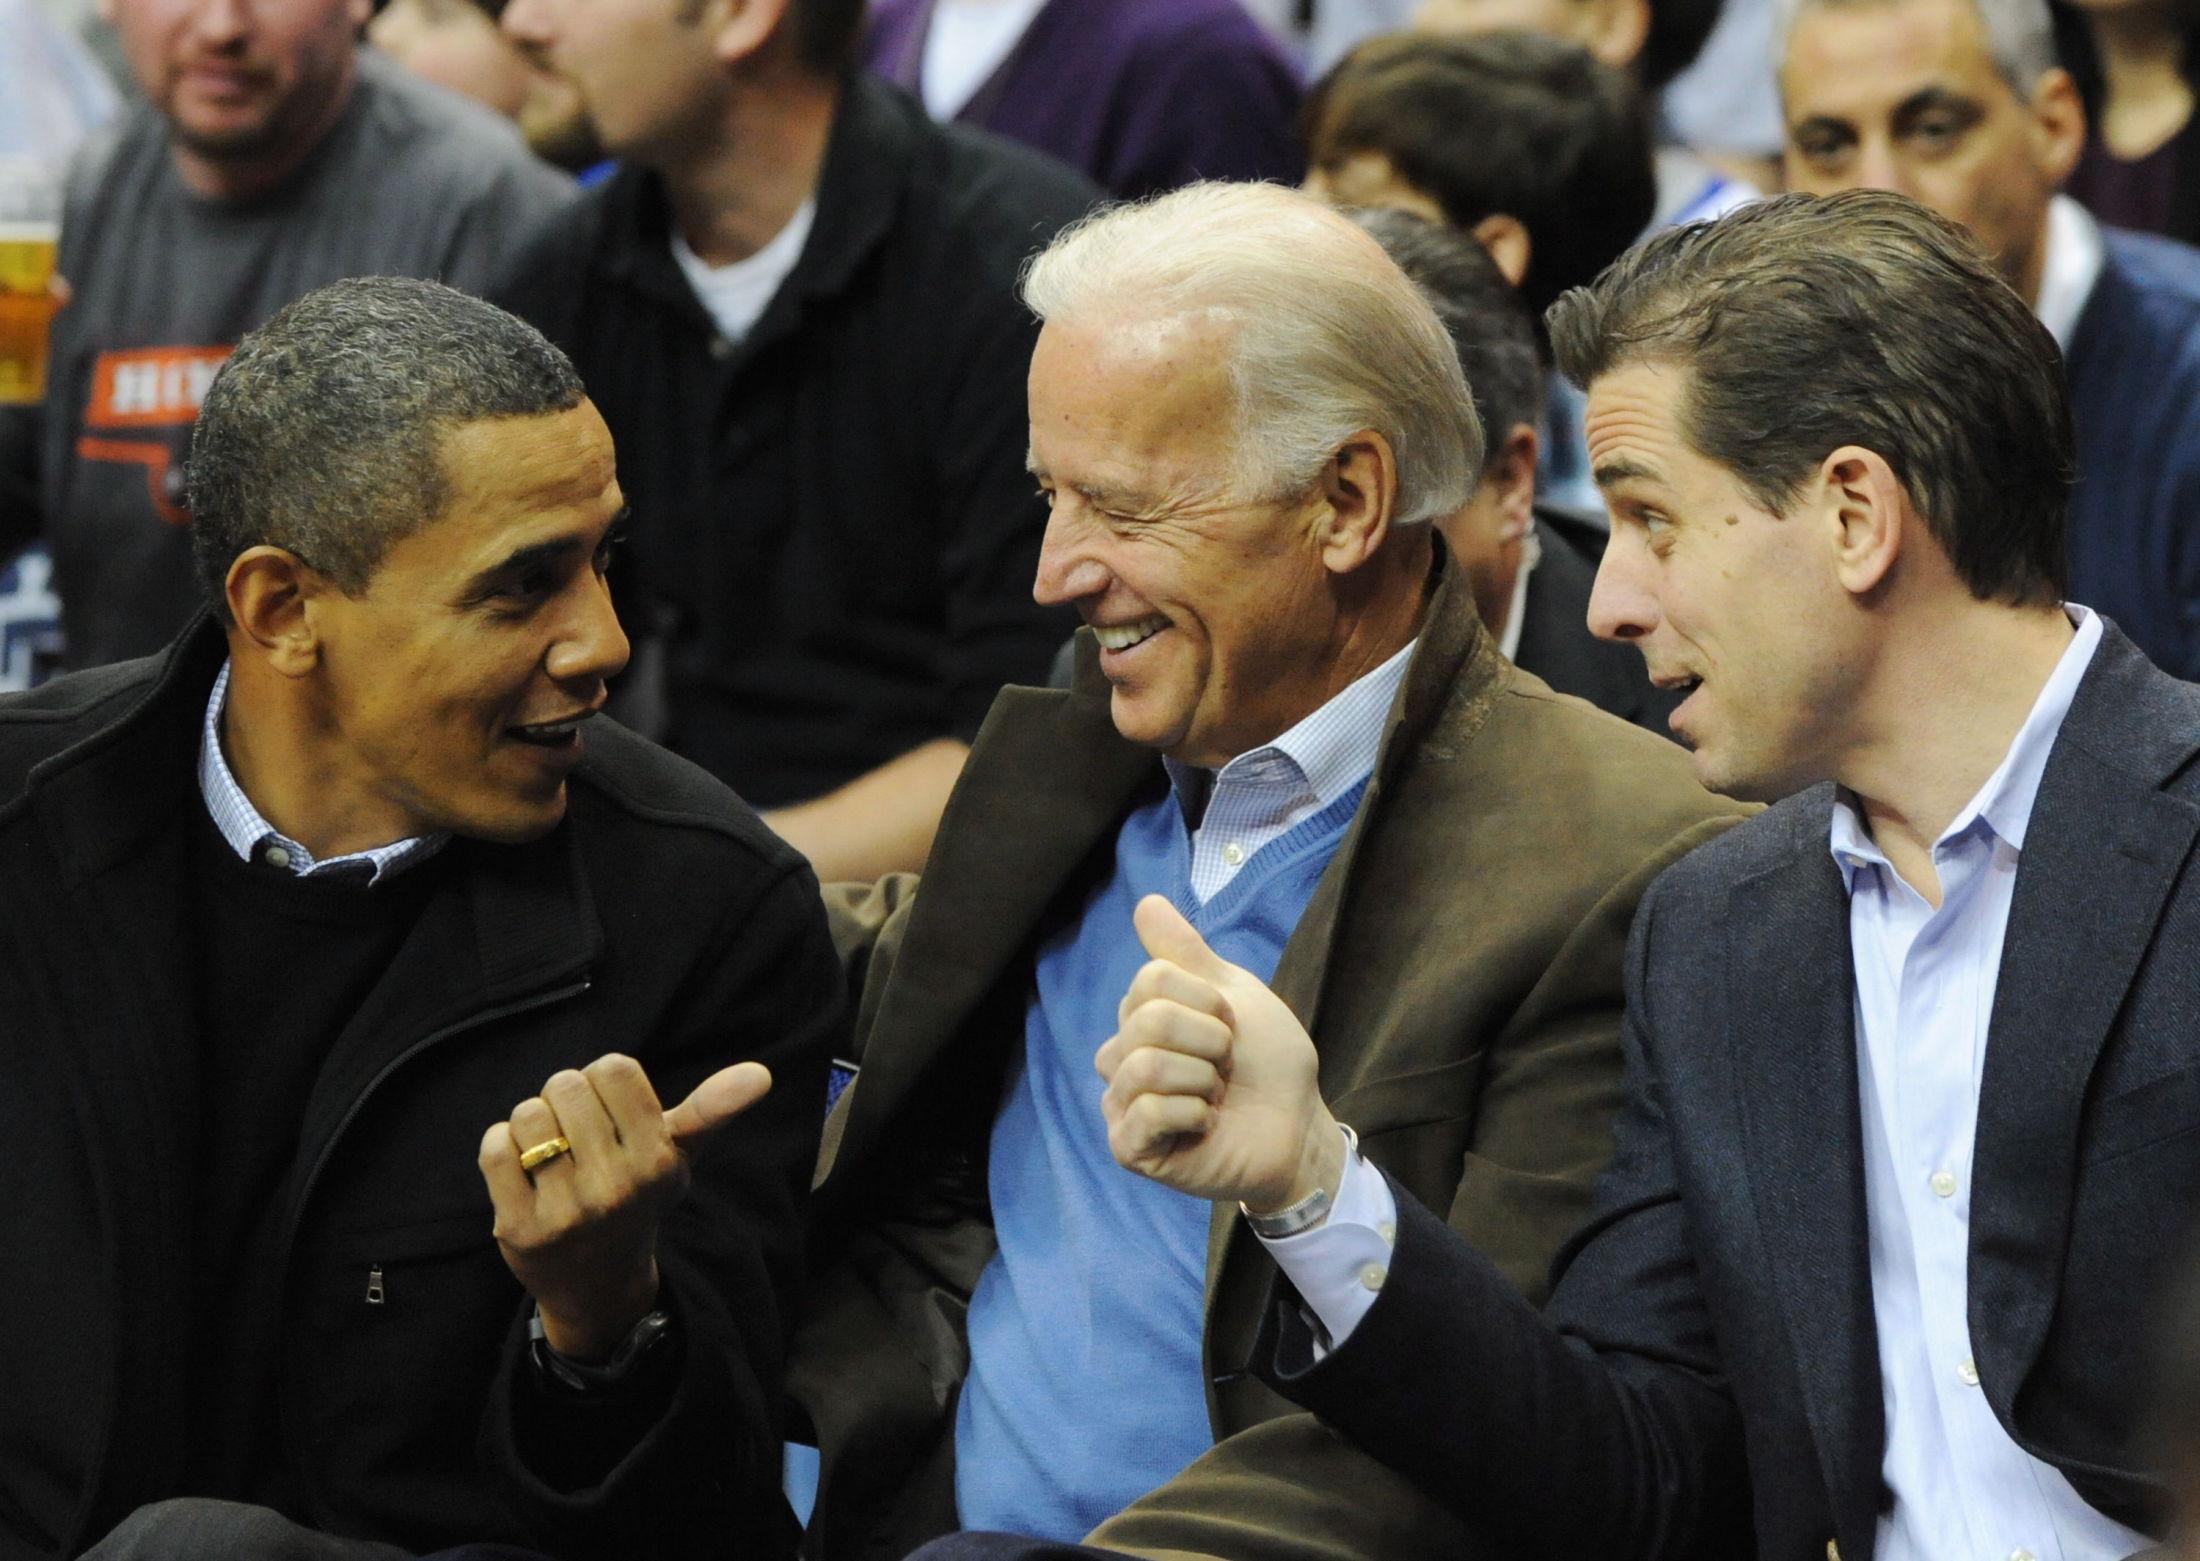 HVERDAGSCLASSY: Joe Biden med daværende president Barack Obama, og sønnen Hunter, under en basketballkamp i 2010. Biden gikk for en olivengrønn blazer, som spiller godt på lag med den lyseblå ullgenseren under. Genseren plukker også opp fargen fra stripene på skjorten. Foto: Alexis C. Glenn, EPA / NTB